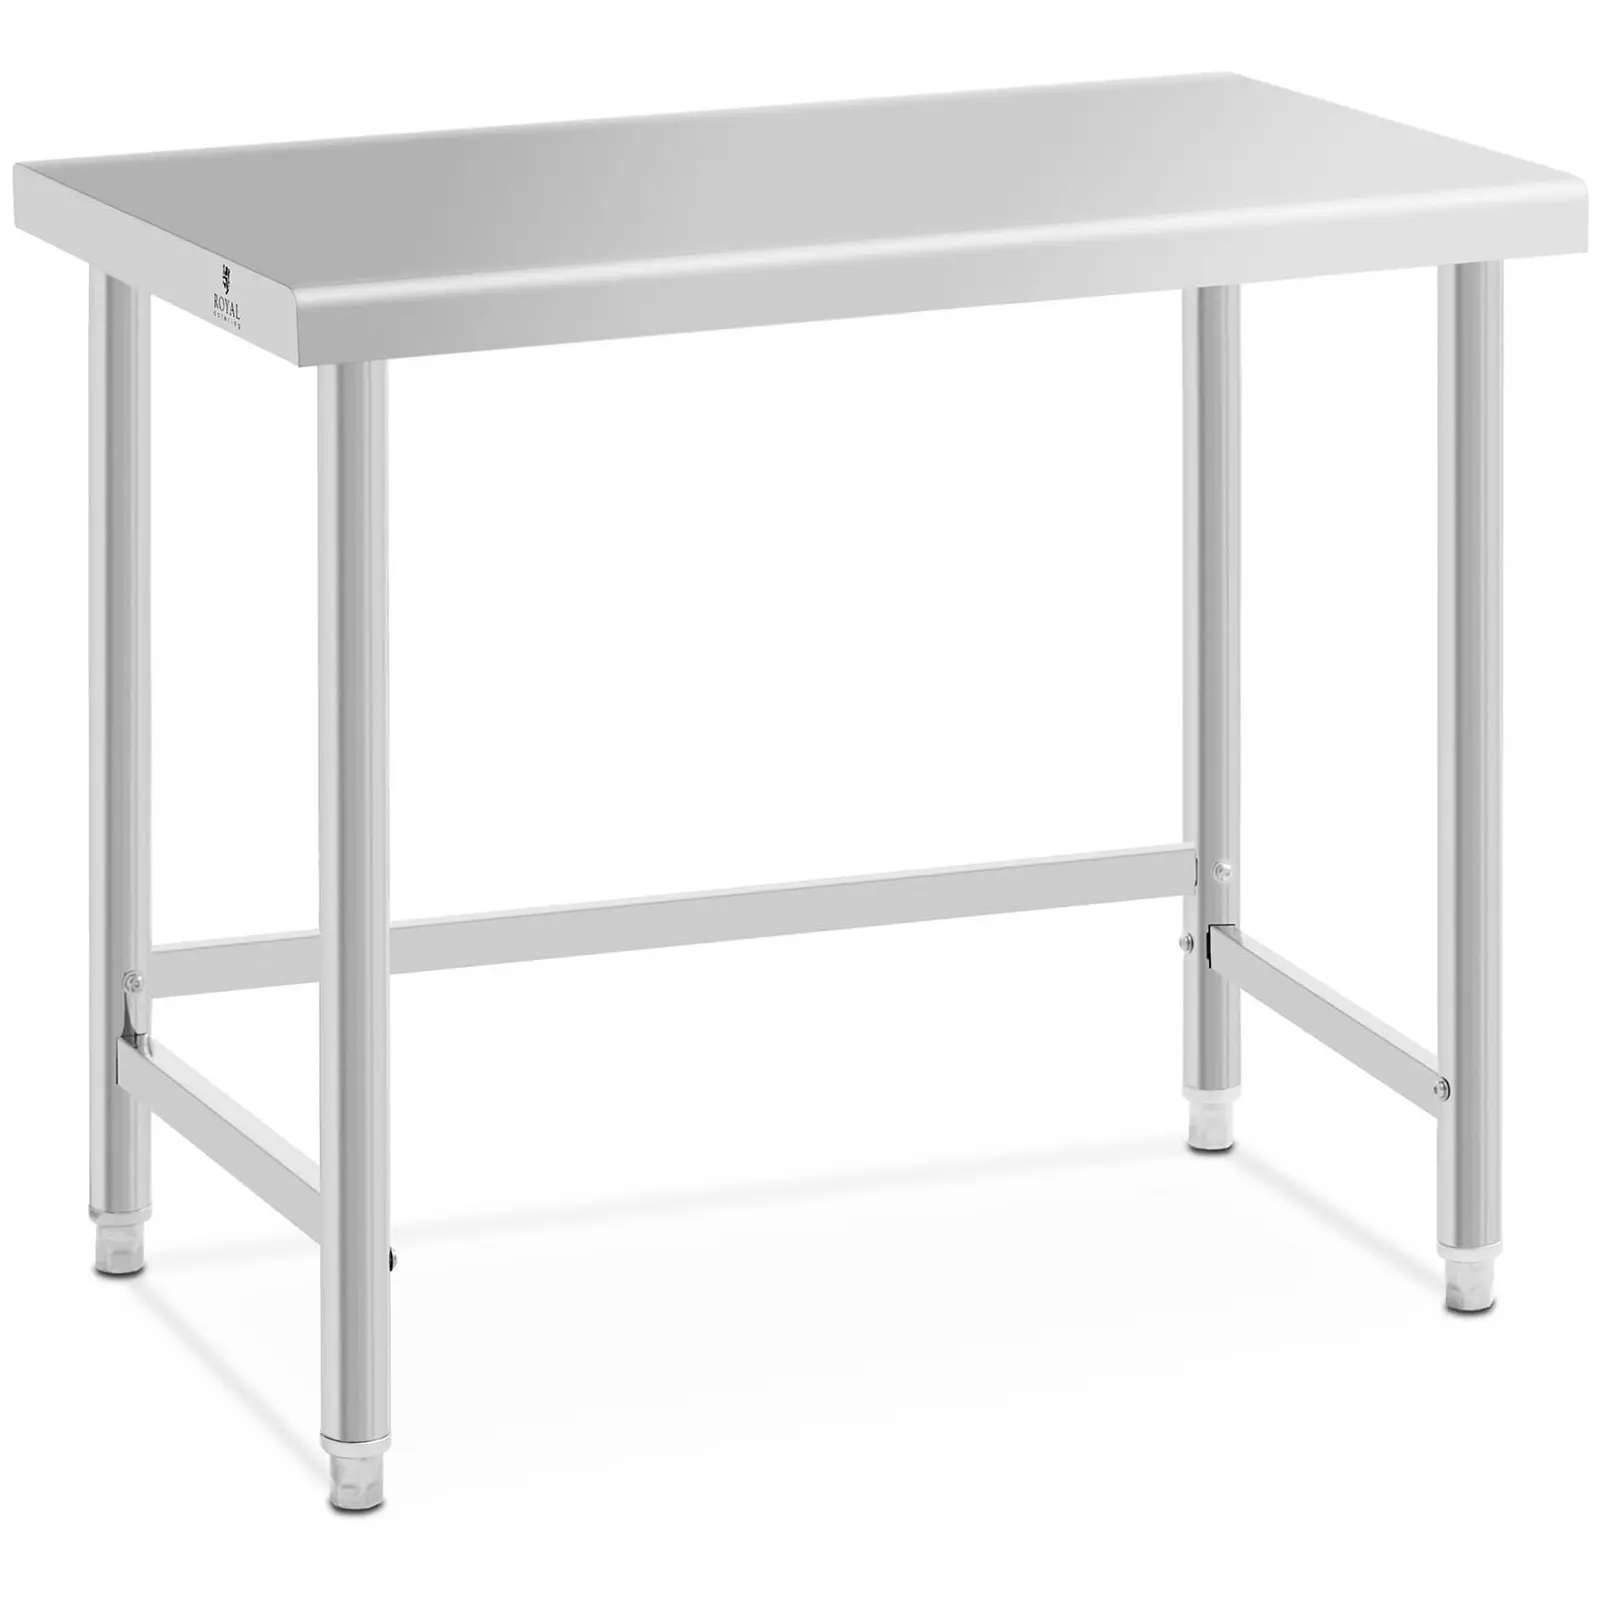 Pracovní stůl z ušlechtilé oceli 100 x 60 cm nosnost 90 kg - Pracovní stoly Royal Catering